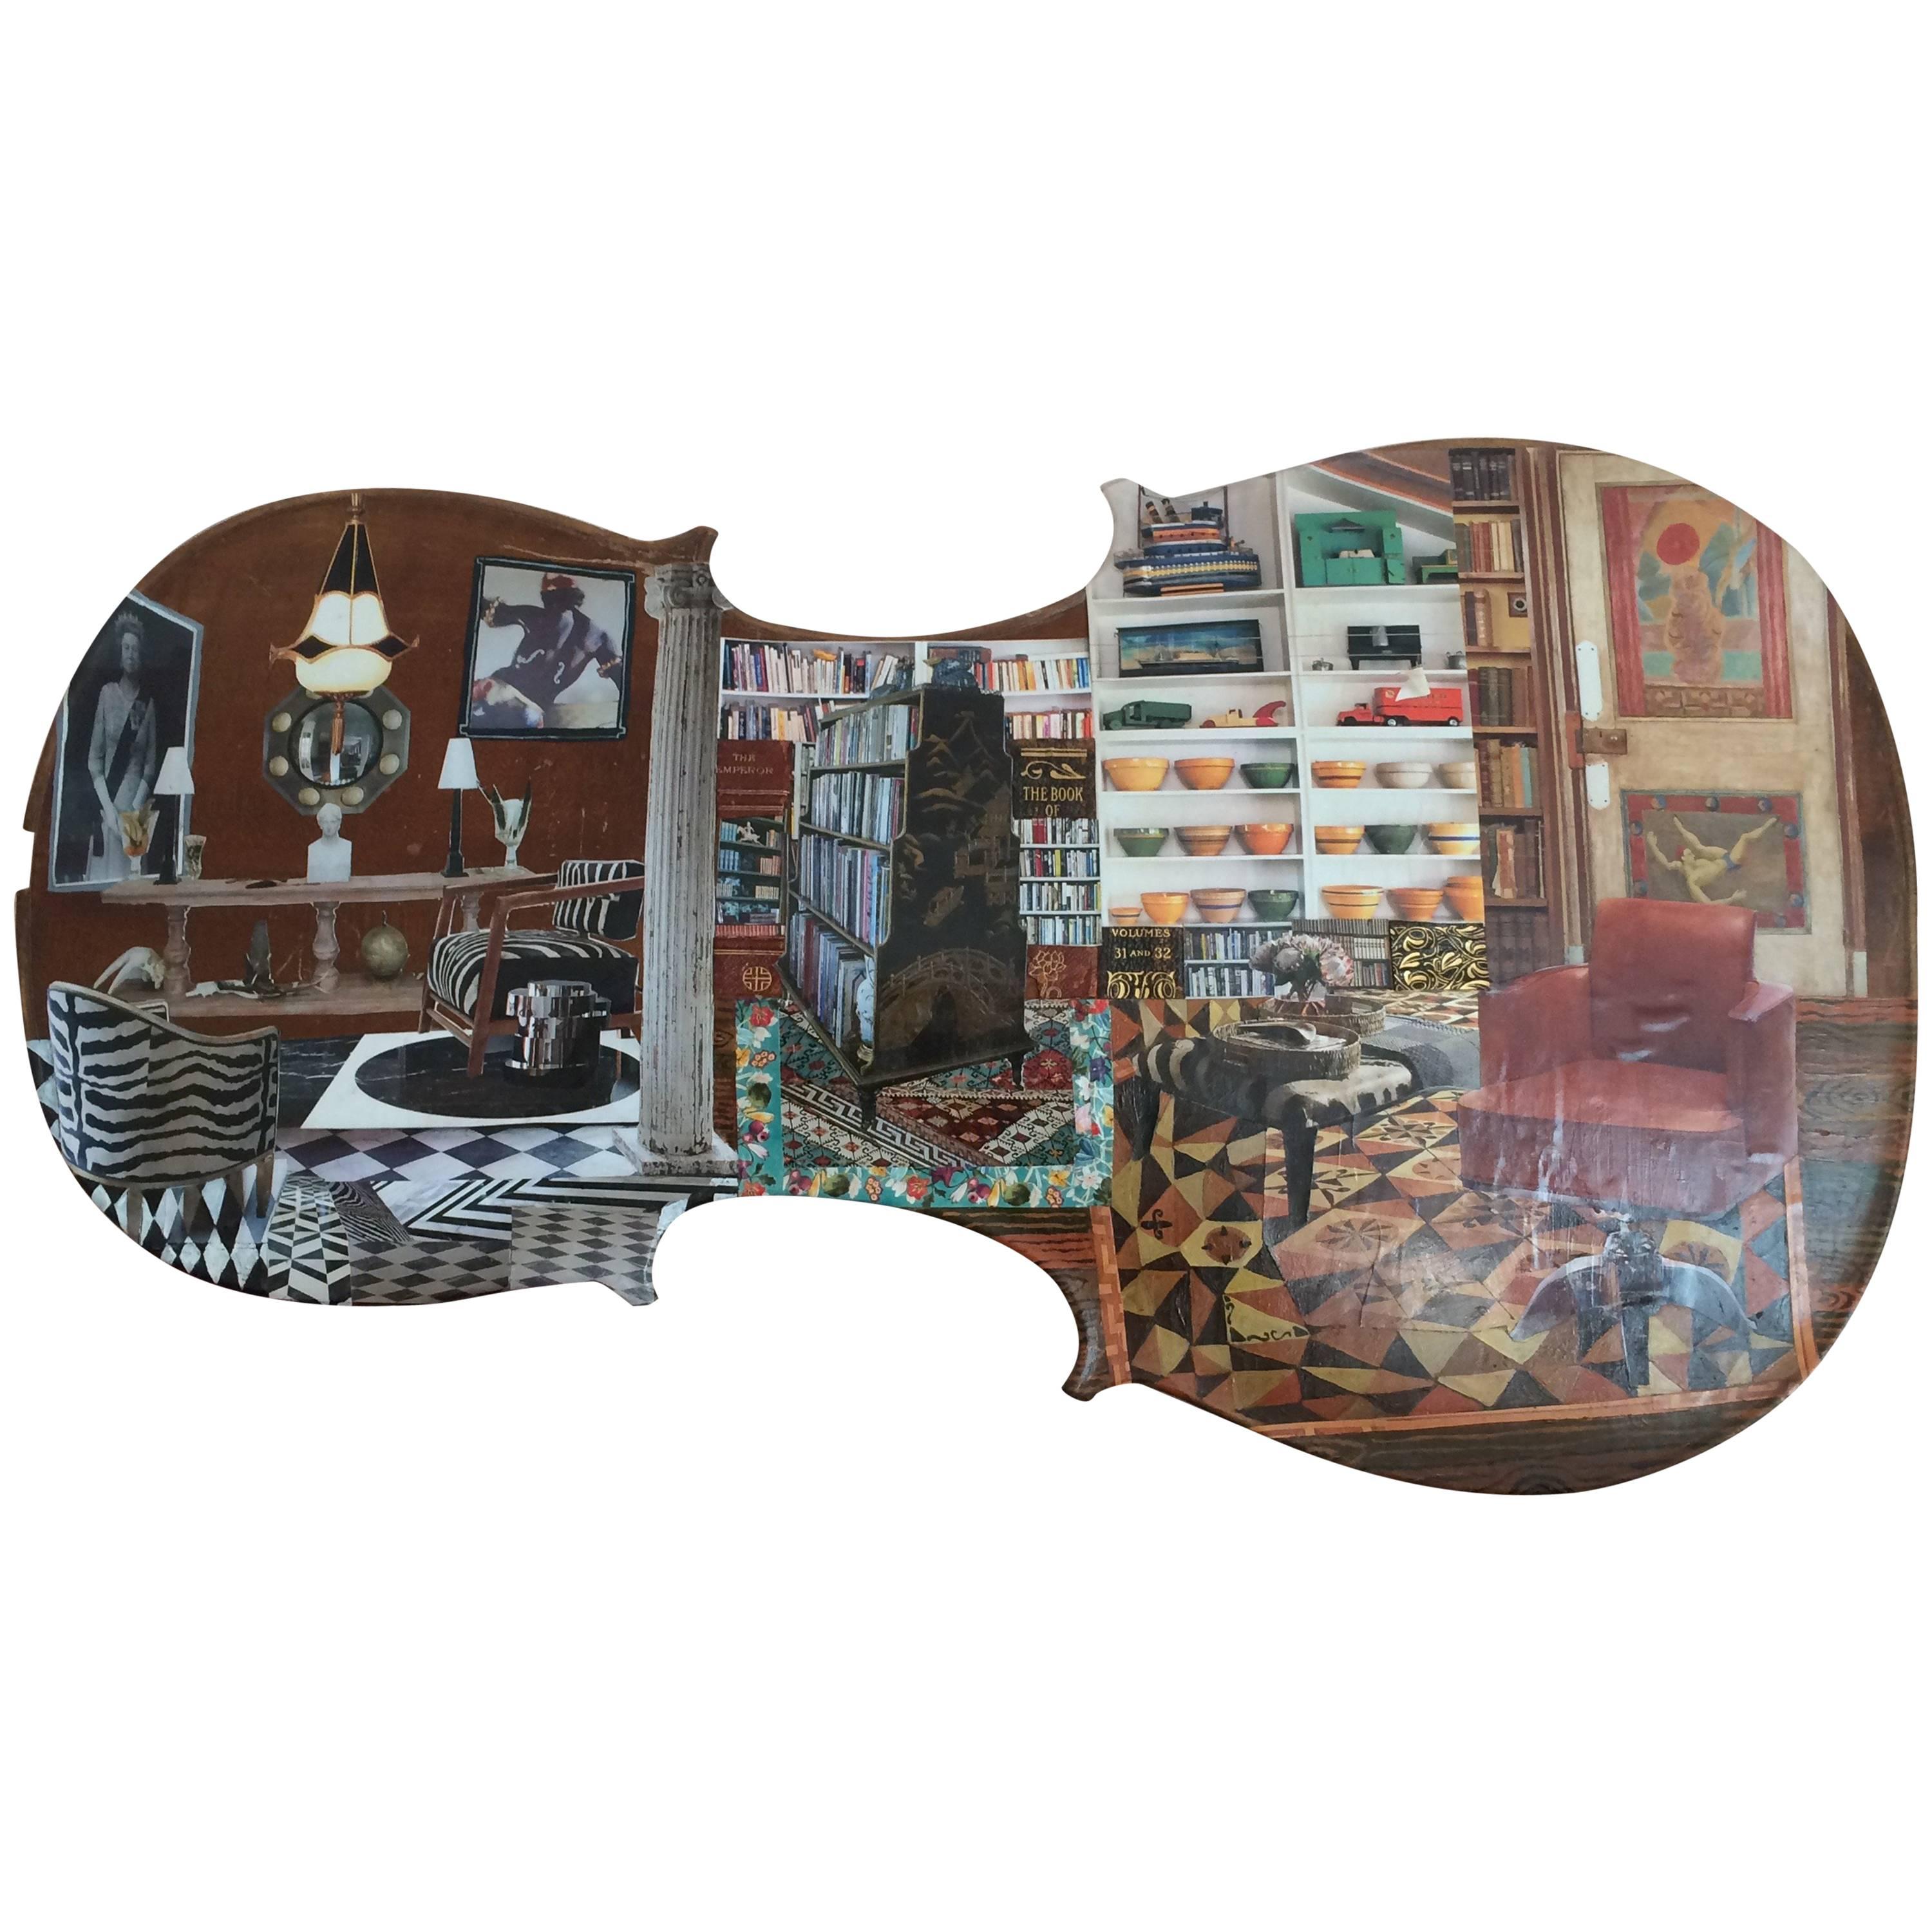 Imaginative Collage of Fantasy Manhattan Interior on Cello For Sale